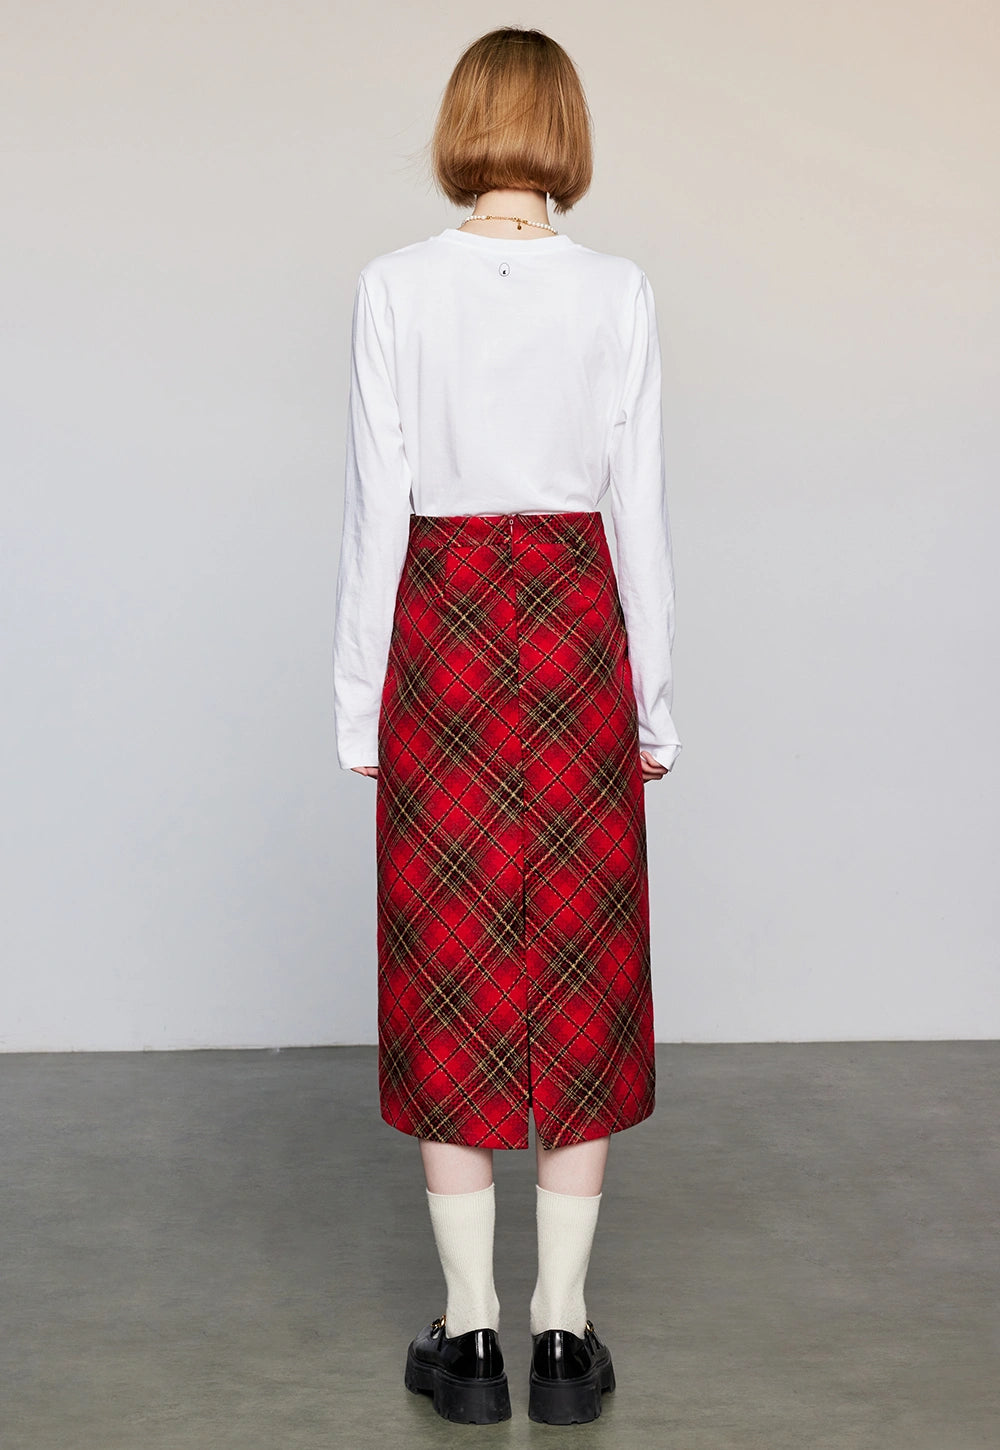 Women's High-Waist Plaid A-Line Skirt with Pockets